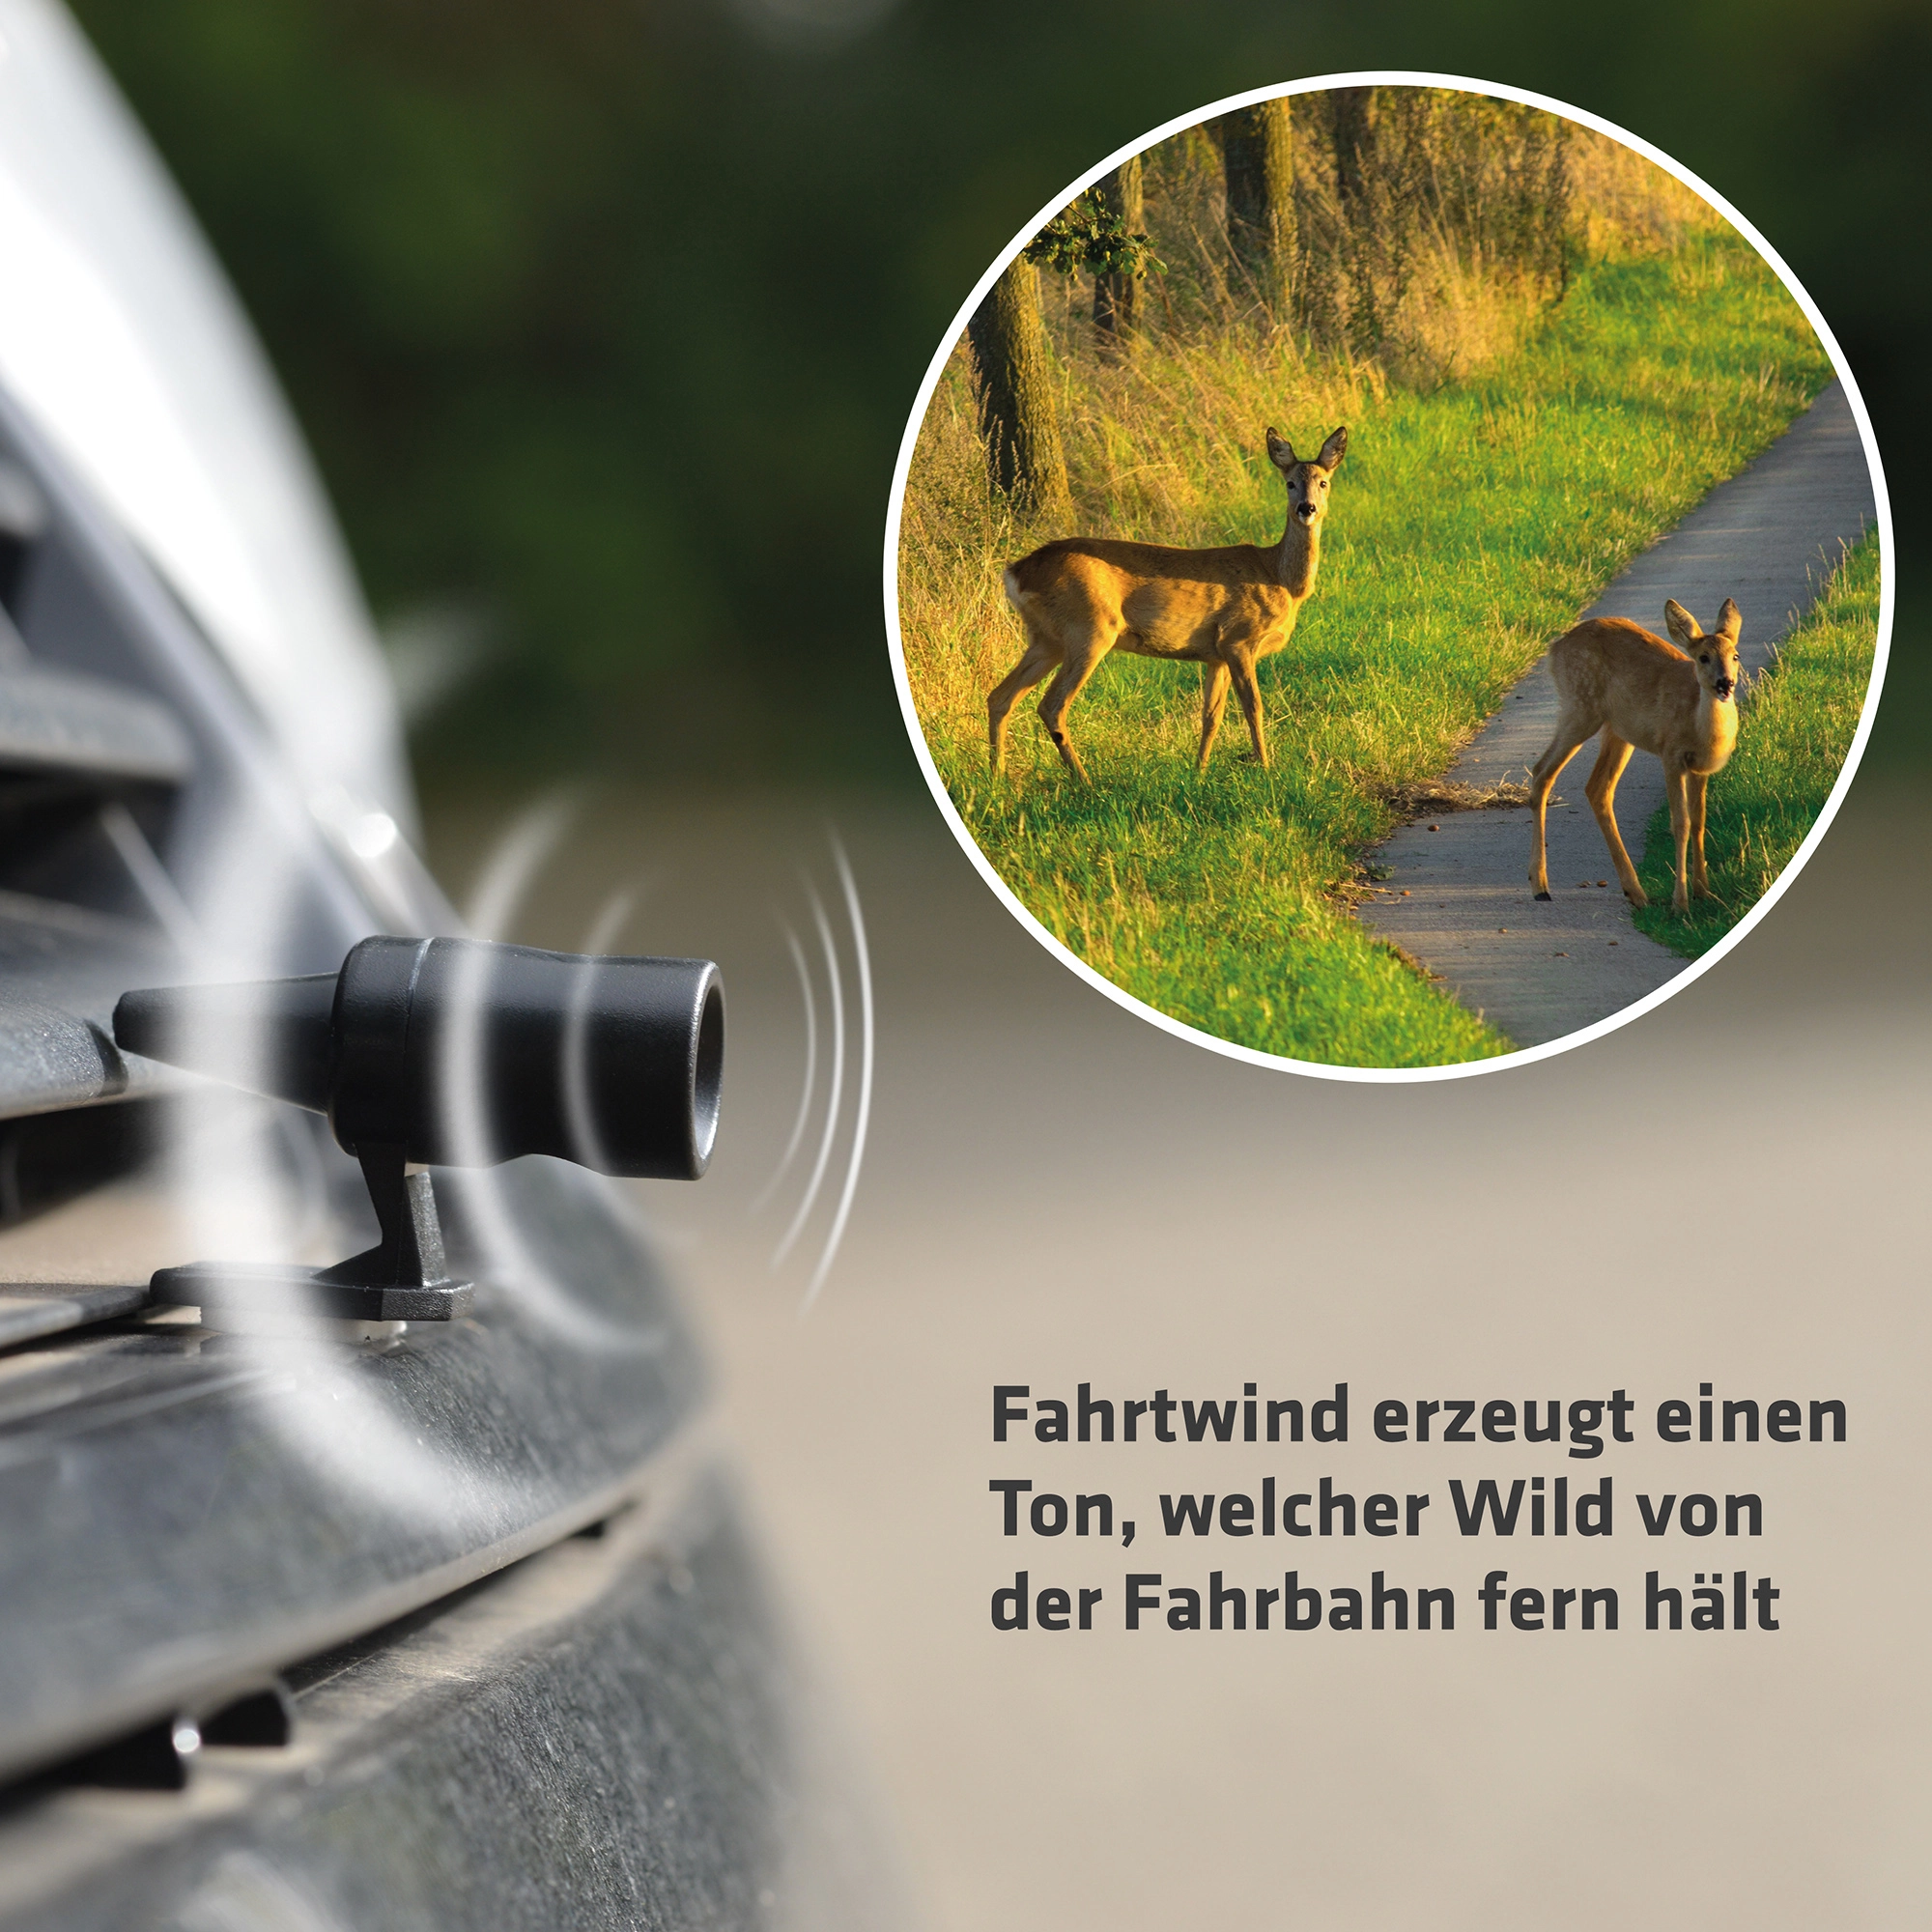 Kaufe Kollisions-Fahrgerät, Hirschpfeifen, akustisches Wildtierwarngerät,  Tieralarm-Sicherheitszubehör